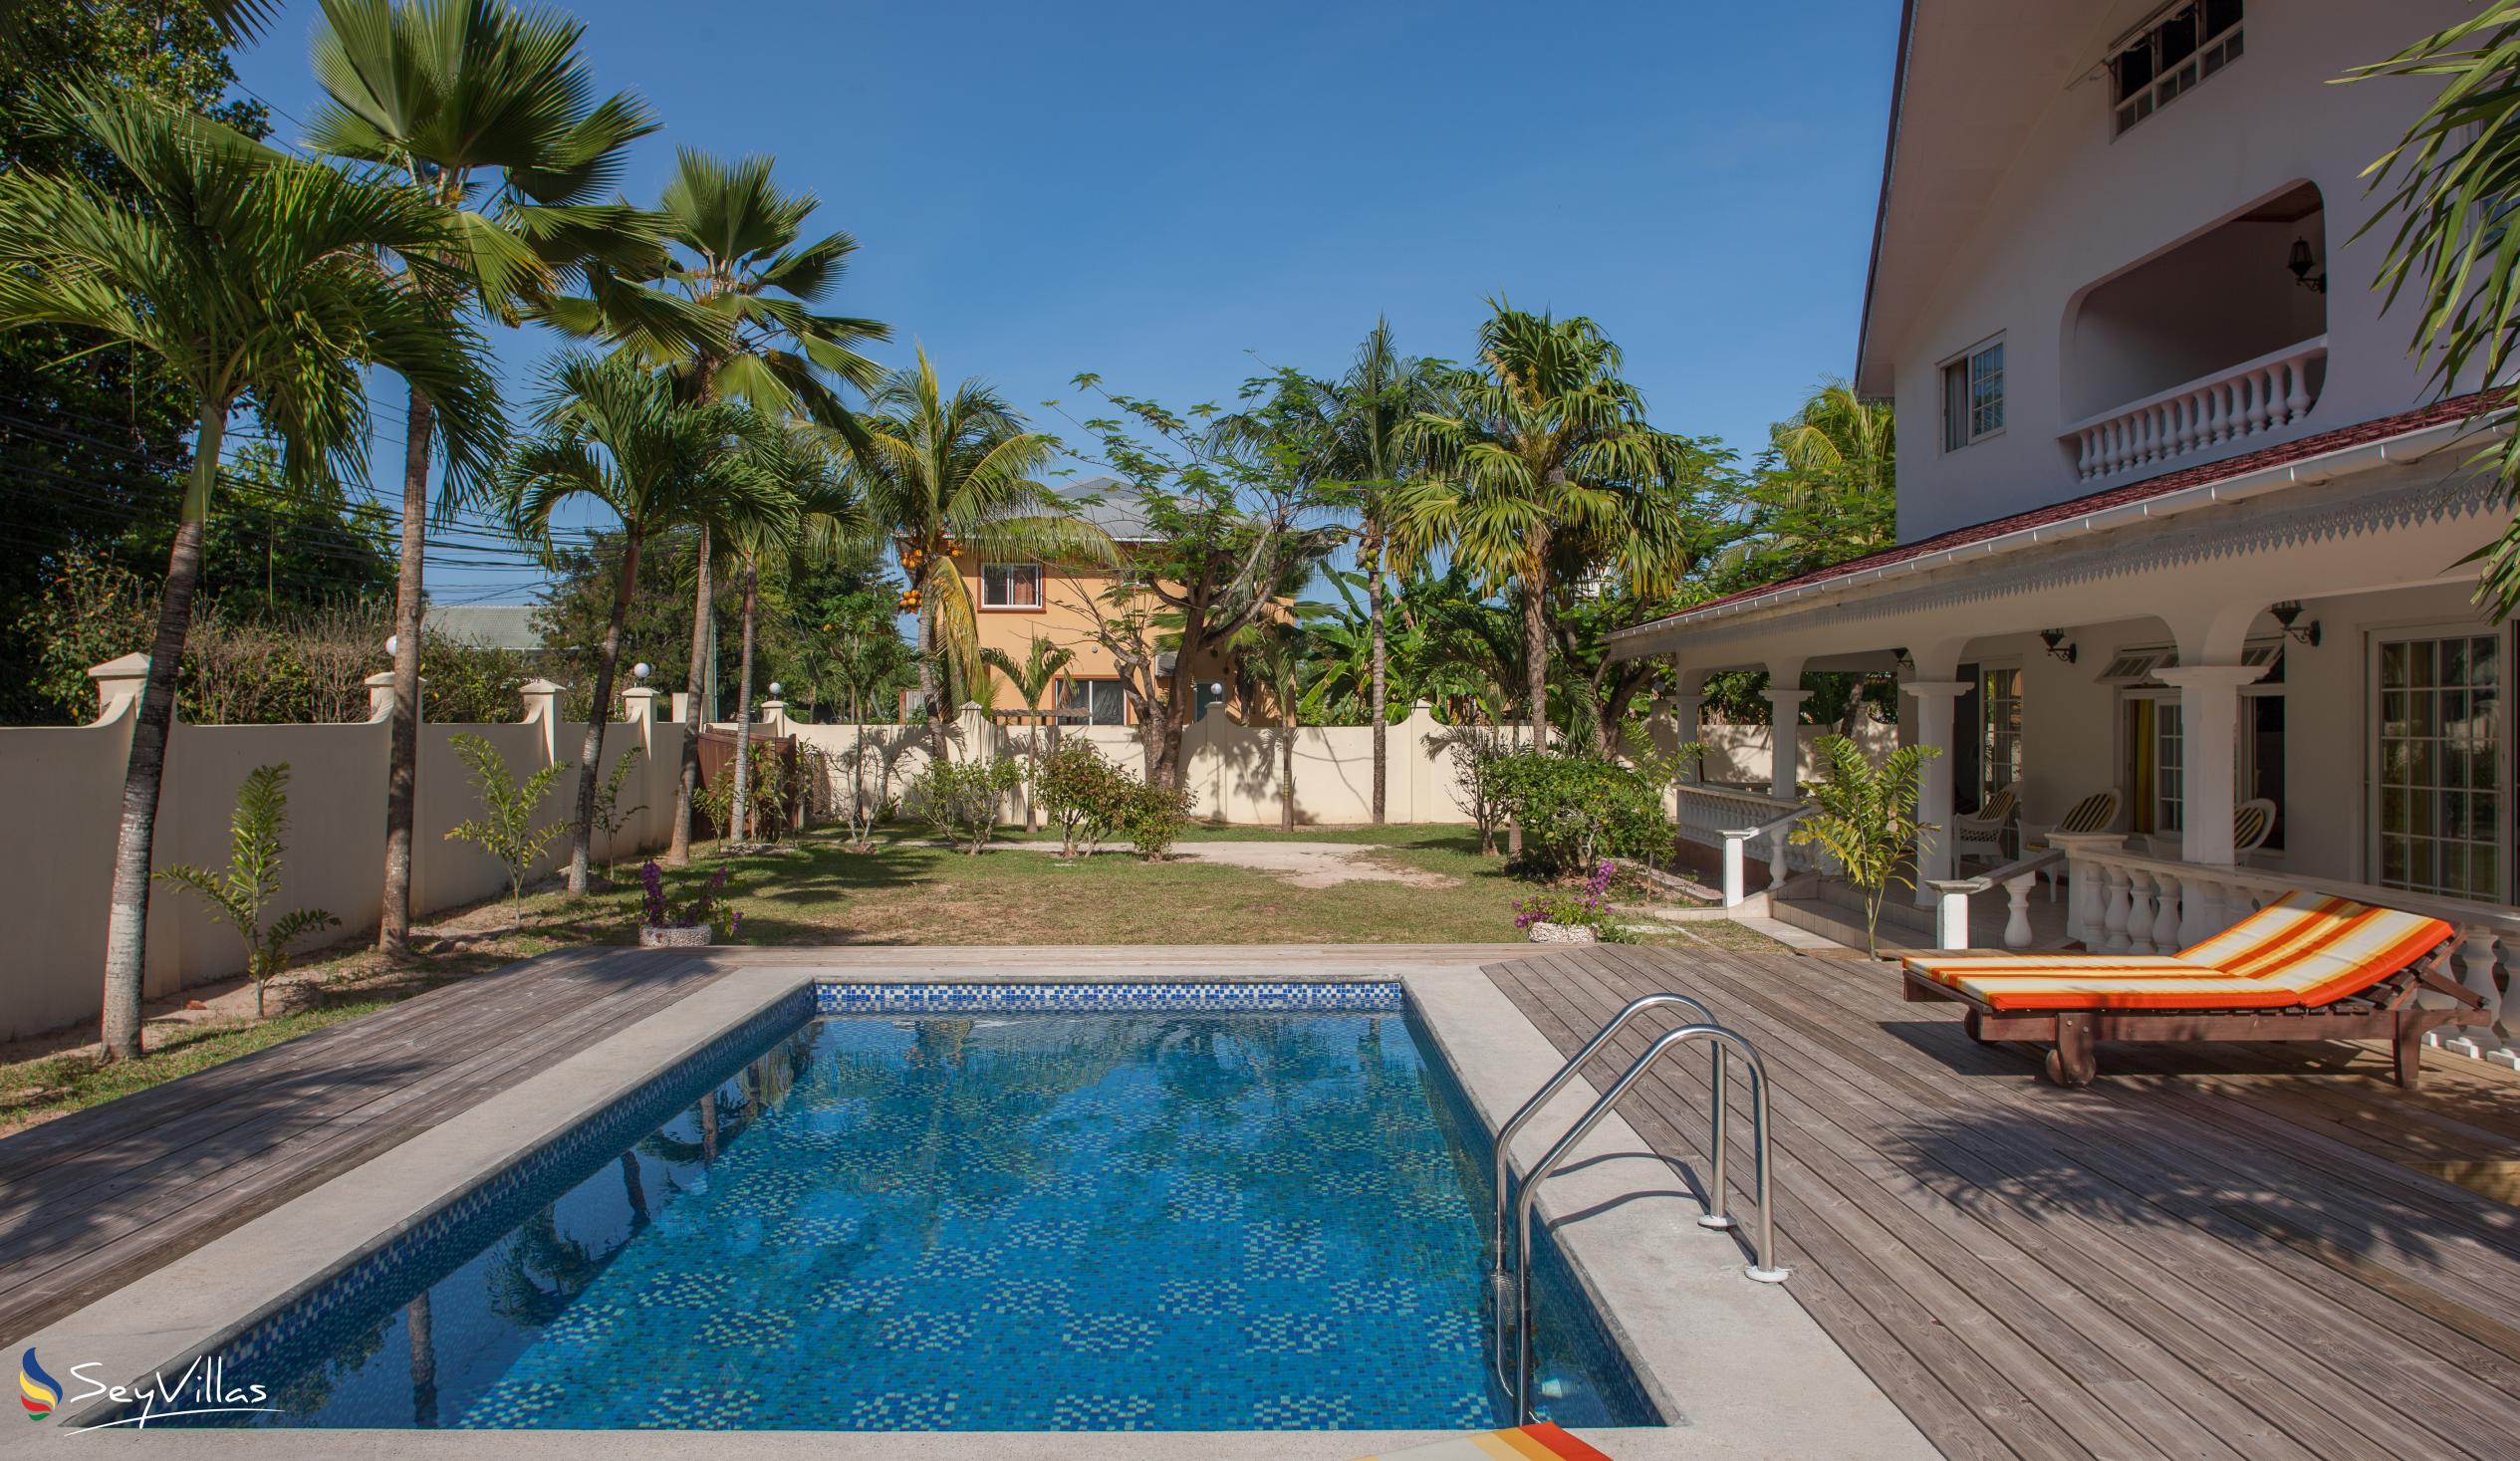 Photo 7: Villa Confort - Outdoor area - Praslin (Seychelles)